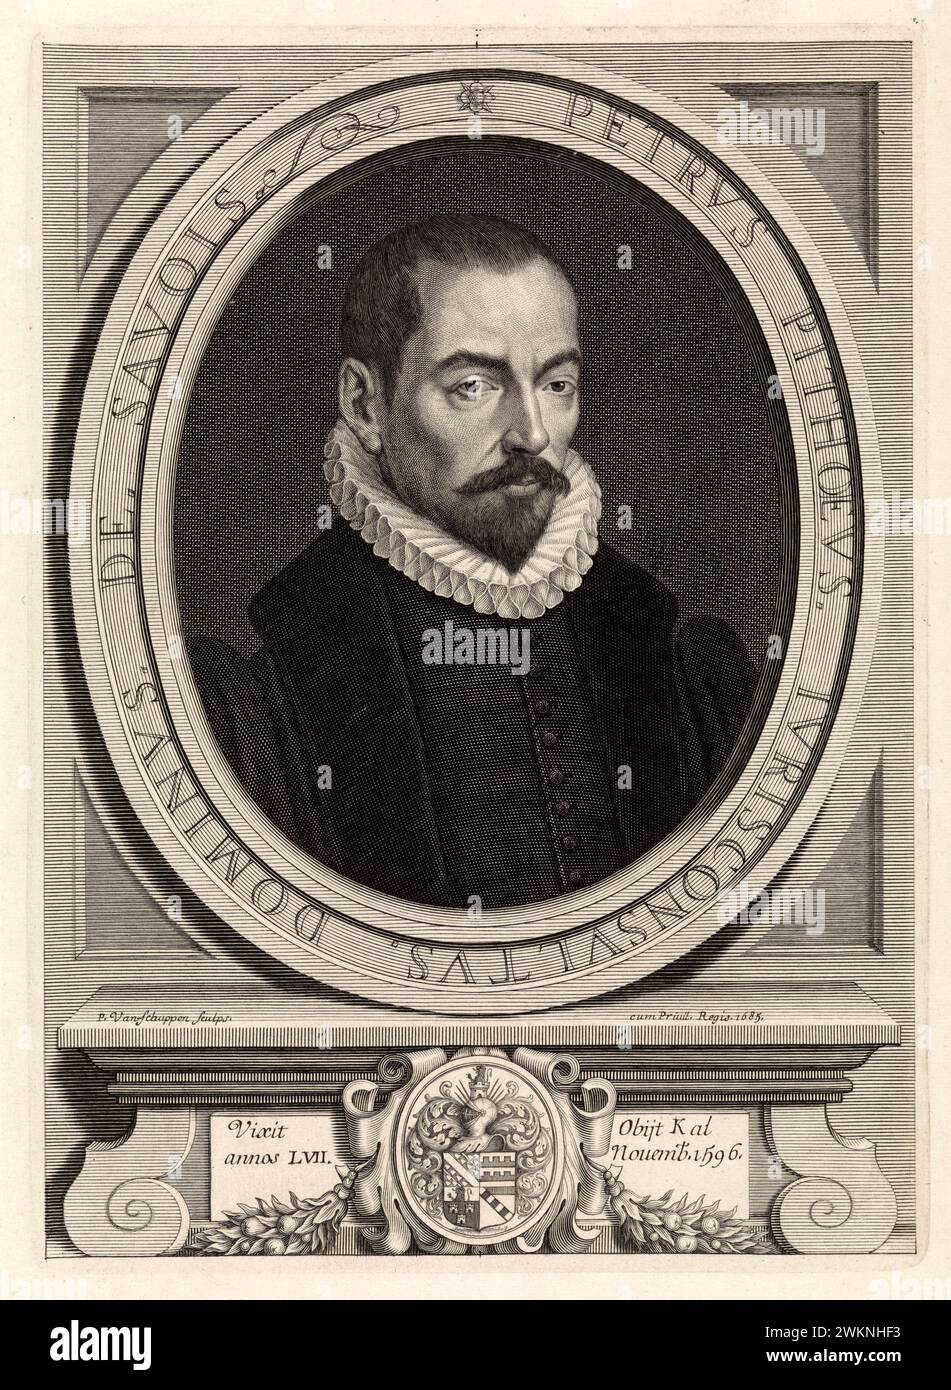 1580 c., FRANCIA: Il giurista, storico e scrittore italiano PIERRE PITHOU ( 1539-1596 ). Ritratto inciso da Van Schuppen , pubblicato nel 1685 . - STORIA - FOTO STORICO - STORICO - SCRITTORE - SCRITTORE - LETTERATURA - LETTERATURA - giureconsulto - GIURISTA - LEGGE - LAY - nobili - nobiltà francese - nobiltà francese - FRANCIA - INCISIONE - INCISIONE - ILLUSTRAZIONE - colletto - colletto - colletto - colletto - colletto - GORGIERA - pizzo - pizzo - barba --- Archivio GBB Foto Stock